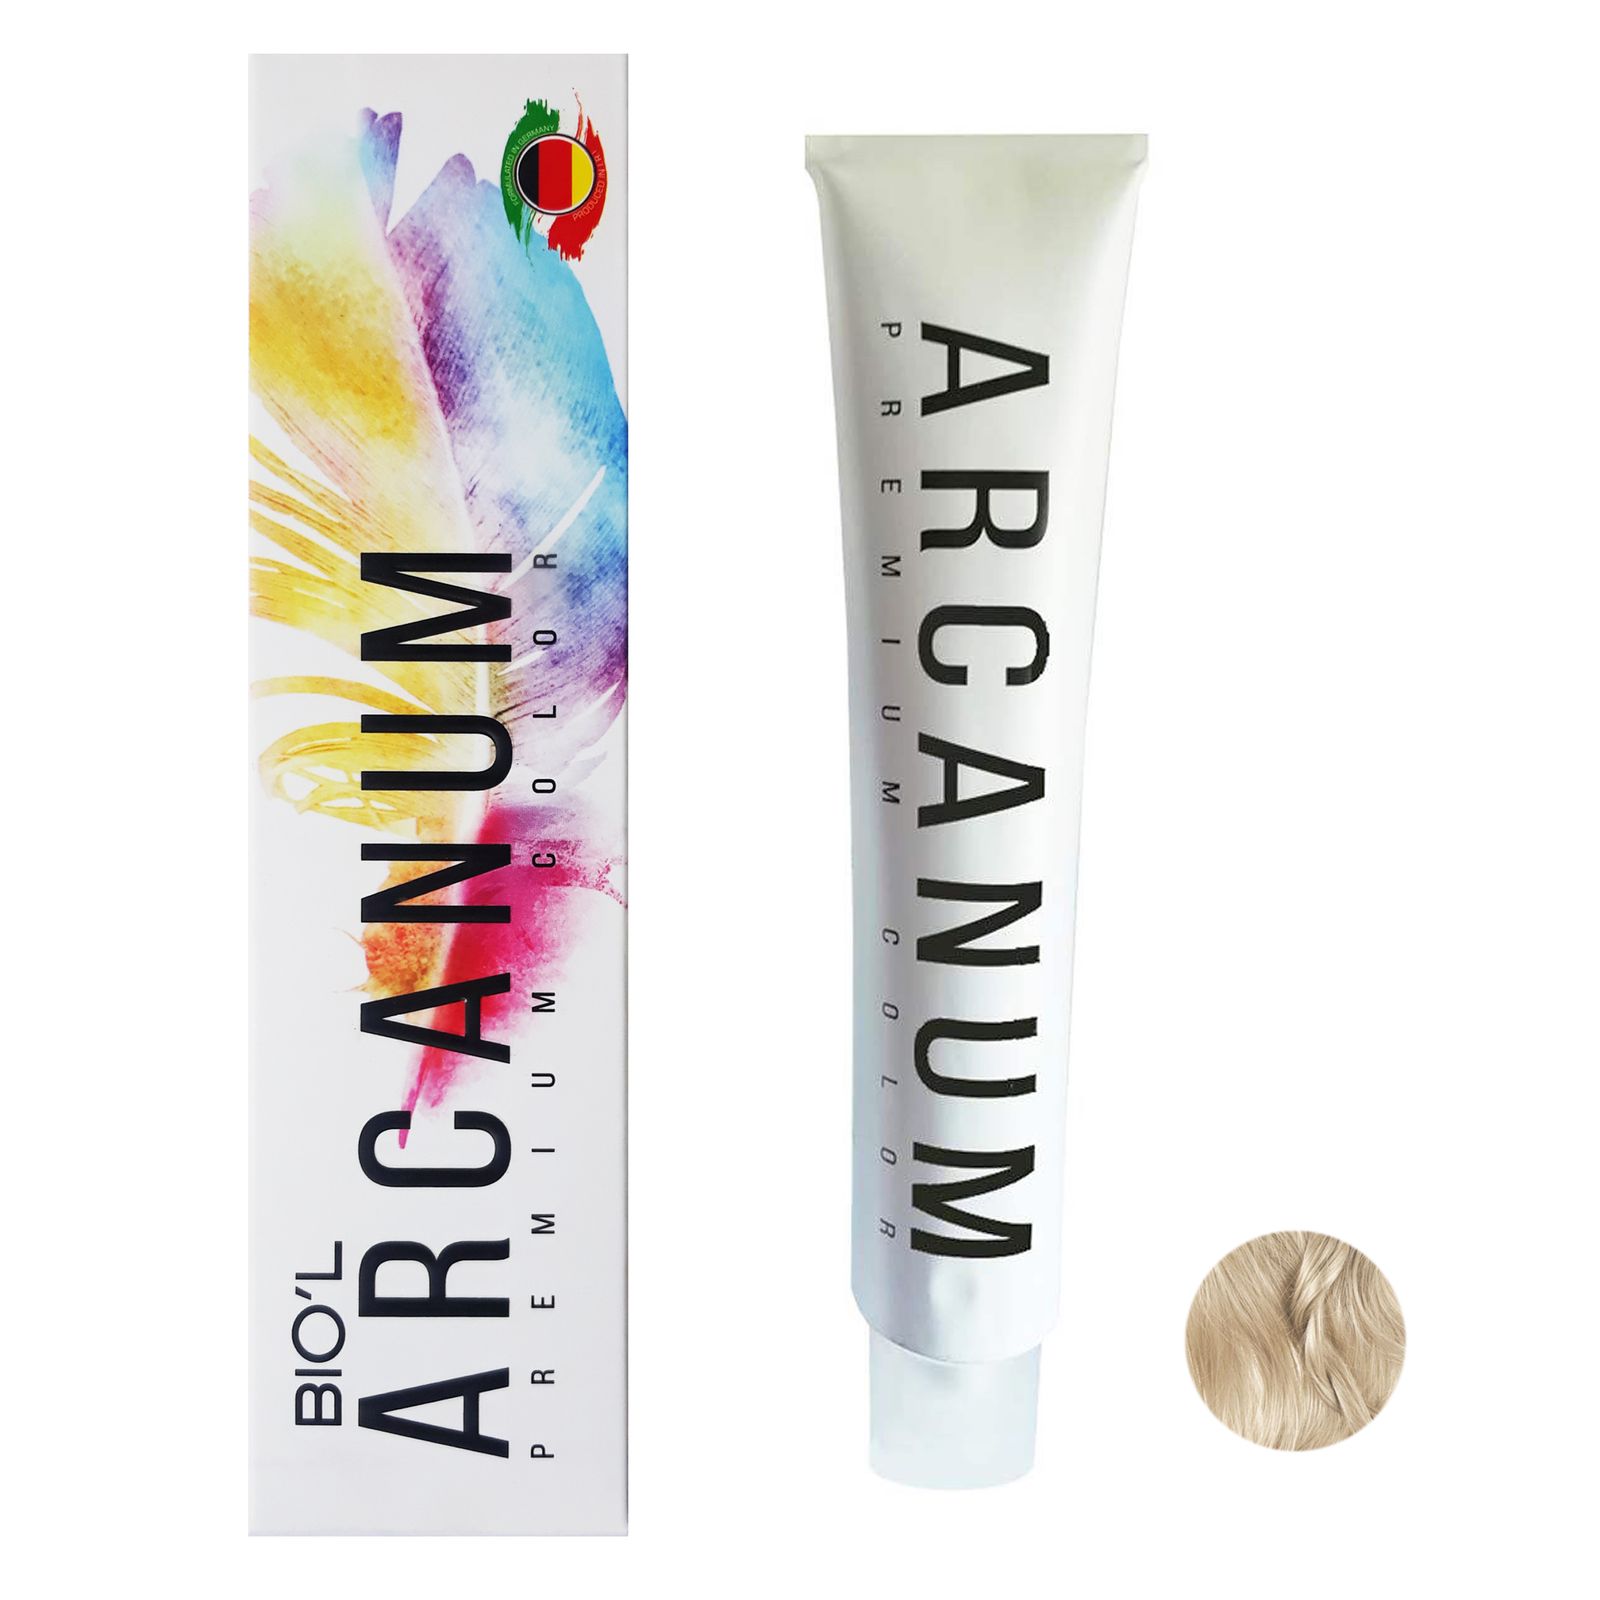 رنگ مو بیول مدل Arcanum شماره 11.19 حجم 120 میلی لیتر رنگ بلوند عدسی روشن